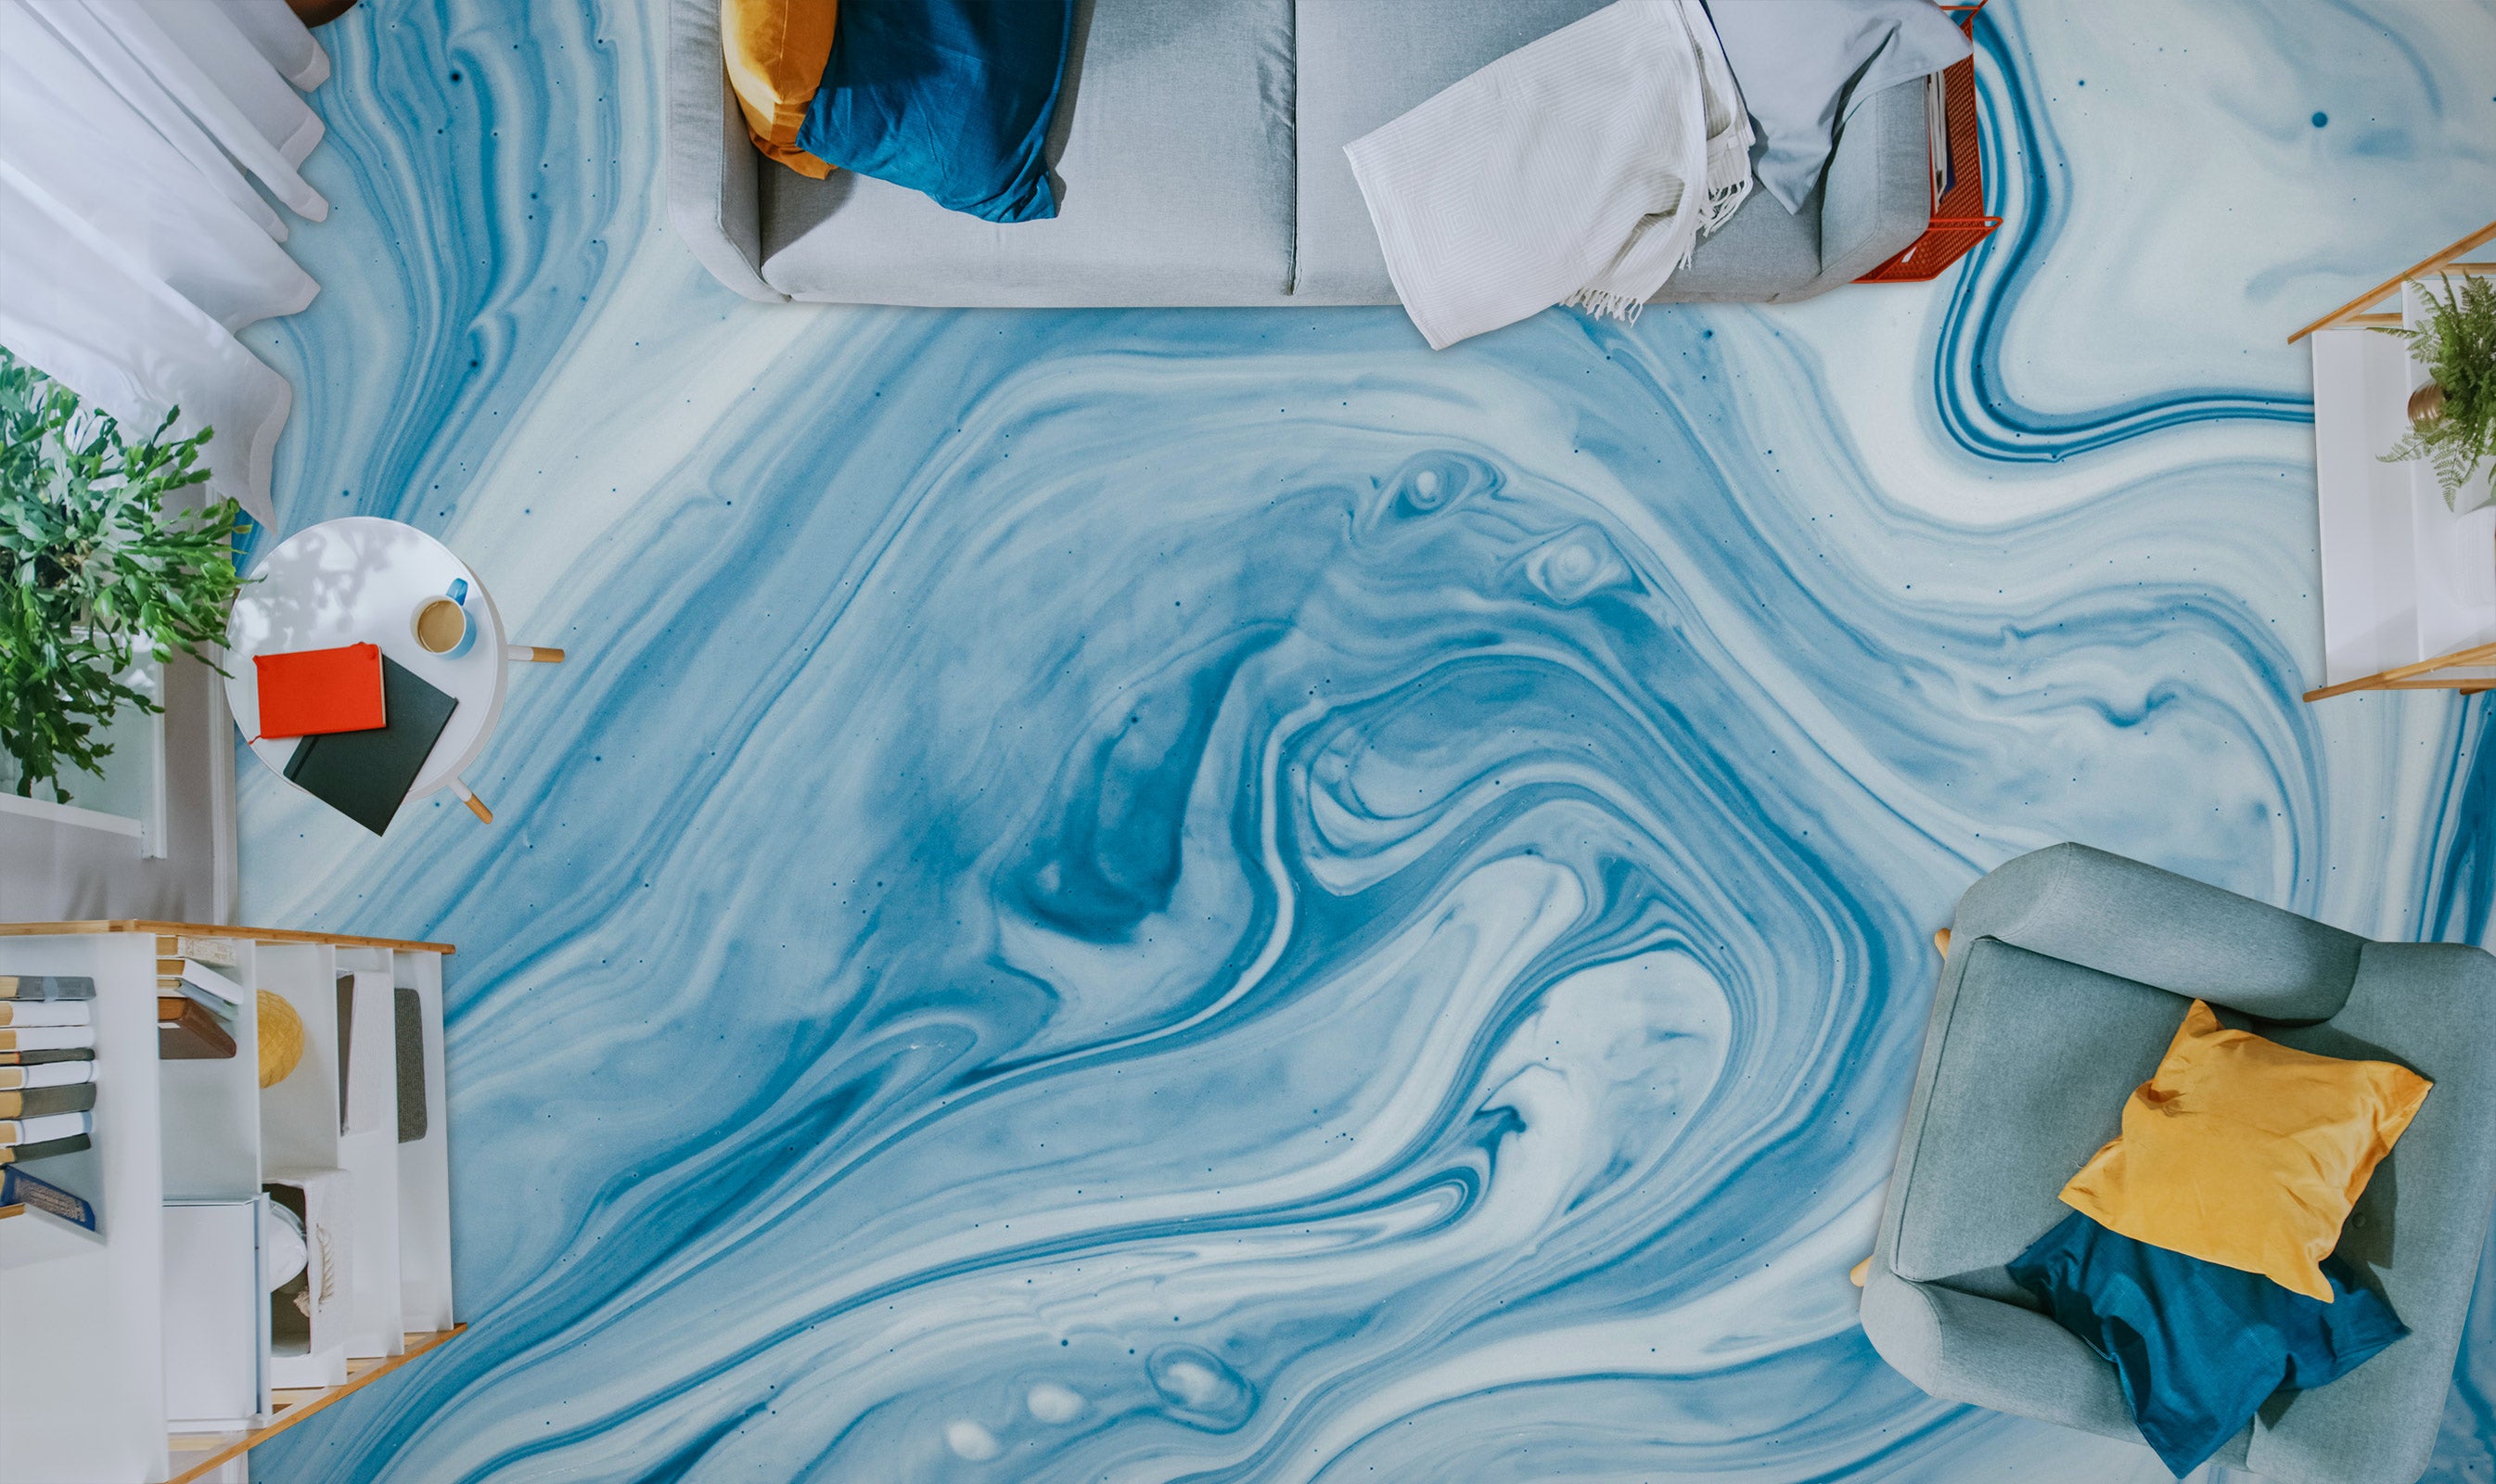 3D Fresh Blue And White 1185 Floor Mural